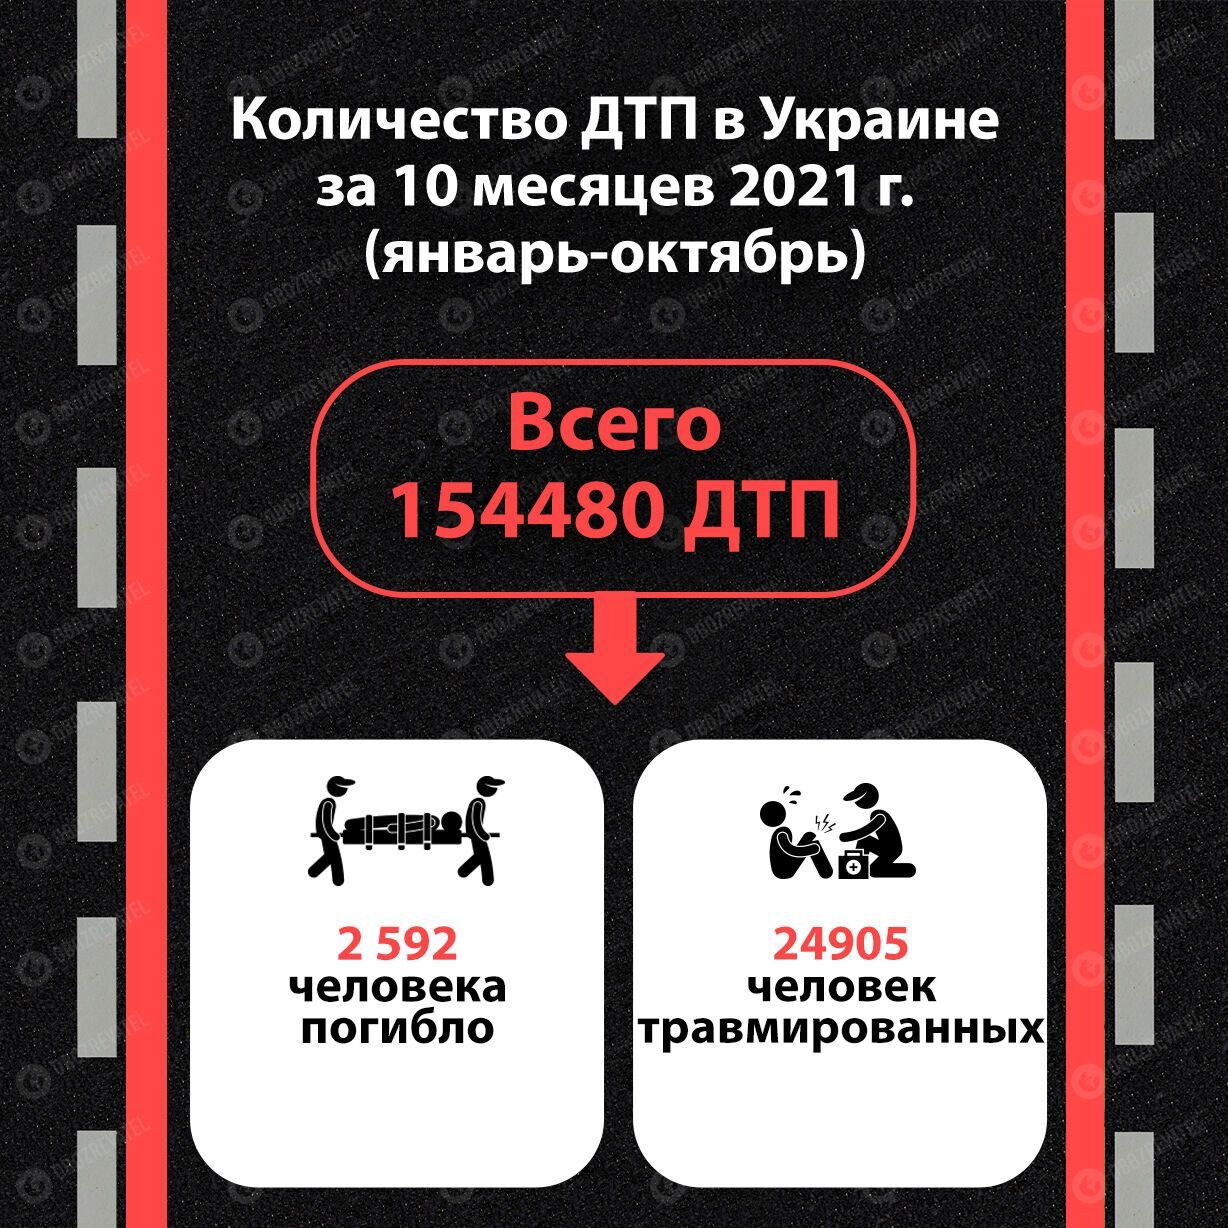 Статистика ДТП в Украине 2021 .